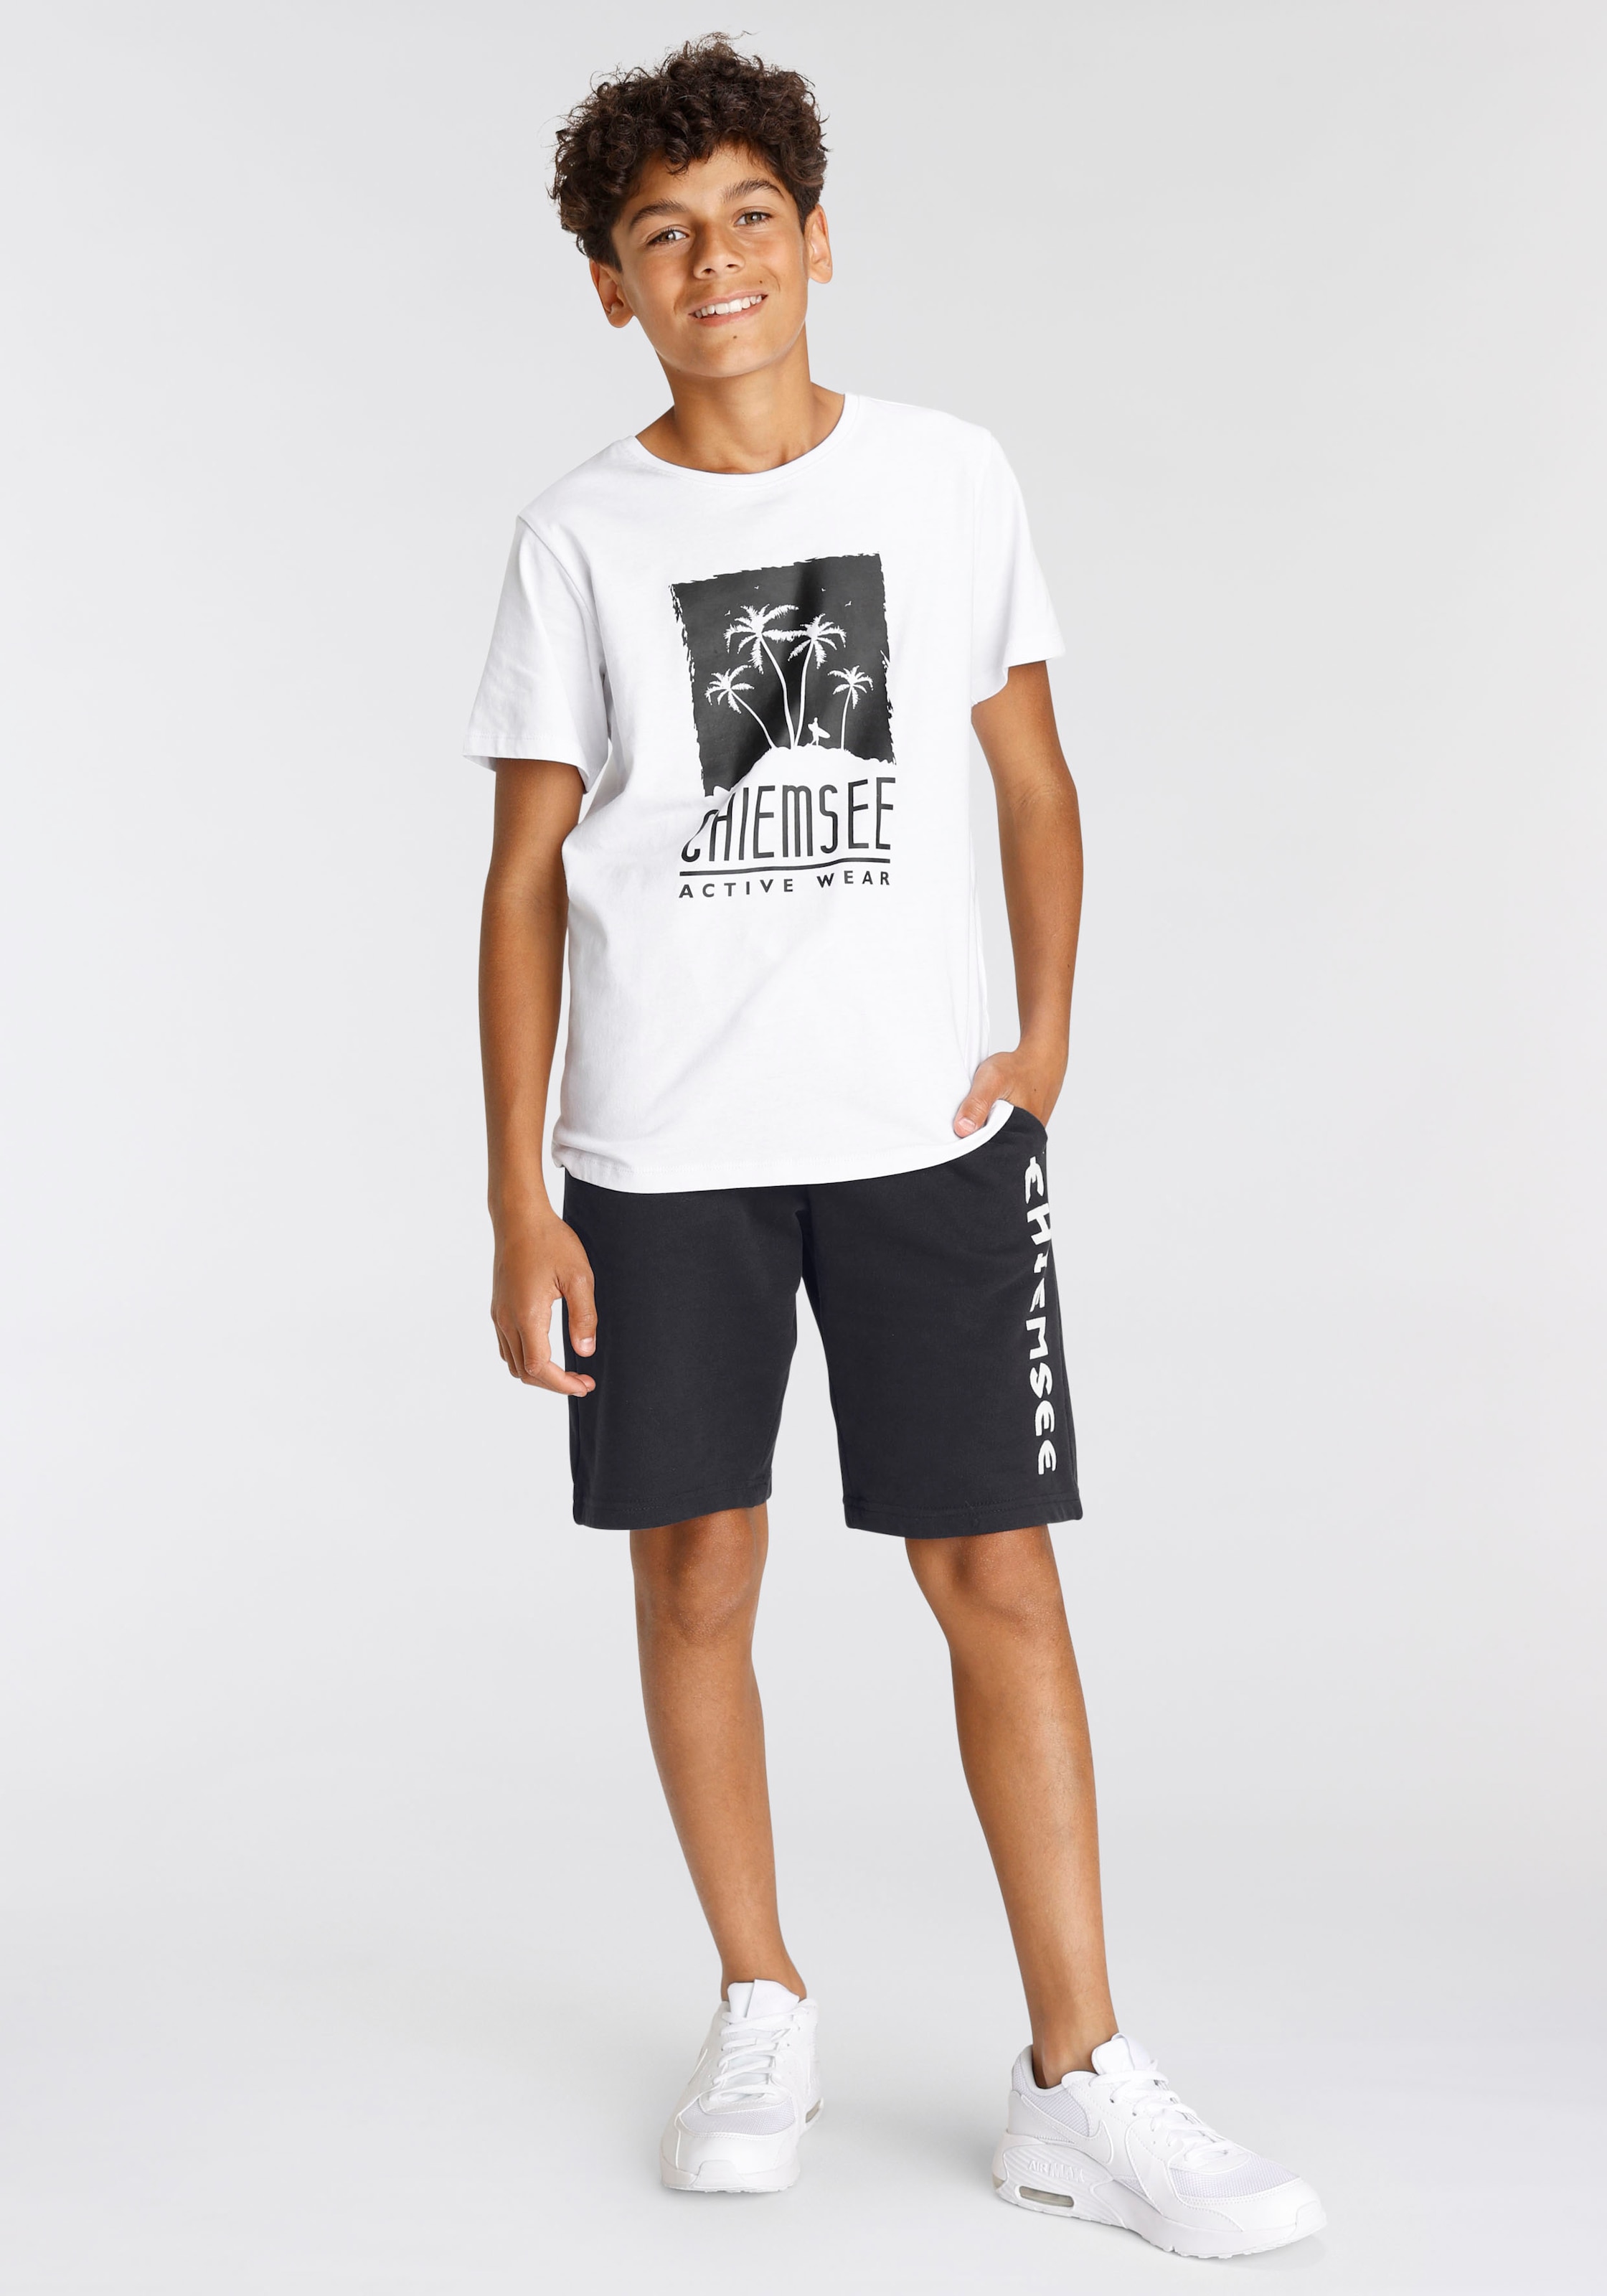 Chiemsee T-Shirt online kaufen | BAUR | T-Shirts